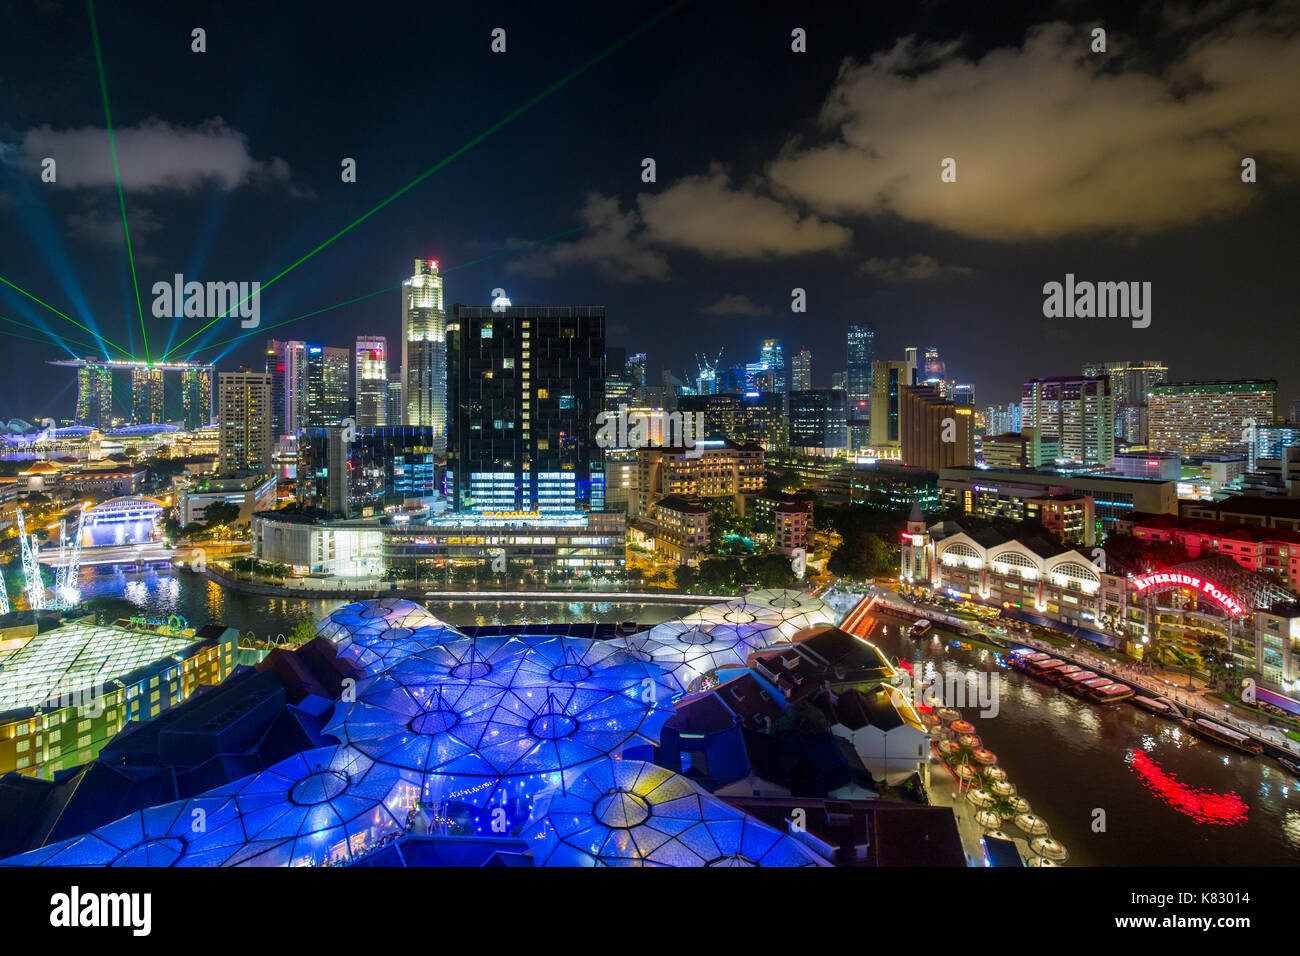 Vista in elevazione oltre lo skyline della città e riverside ristoranti presso il quartiere degli intrattenimenti di Clarke Quay, Singapore, Sud-est asiatico Foto Stock